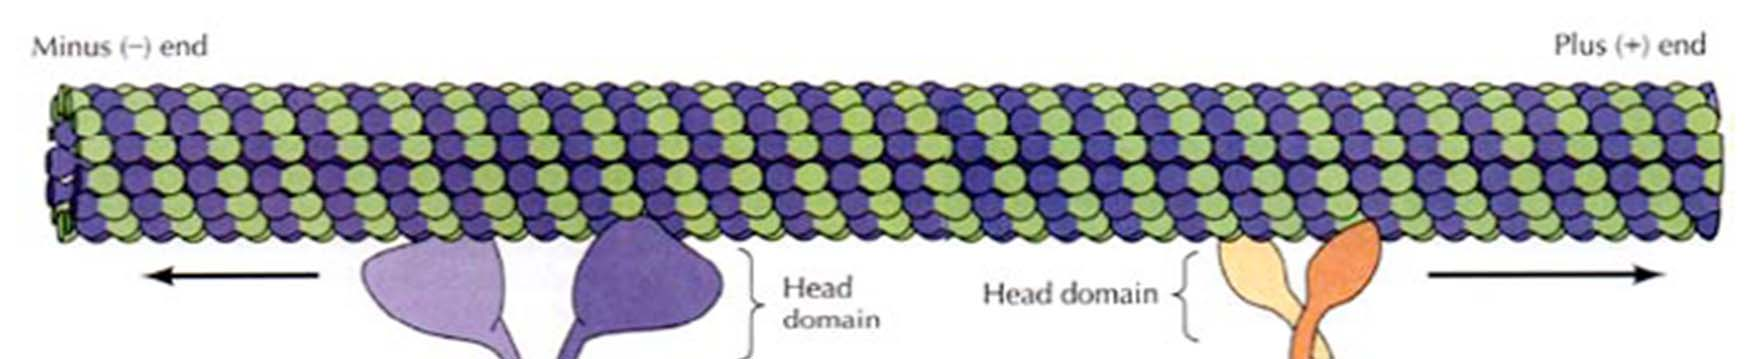 Mikrotubuli-assoziierter Transport Zwei Familien von Motorproteinen, Kinesin und Dynein, transportieren Vesikel, Organellen und Proteine an Mikrotubuli entlang Kinesine